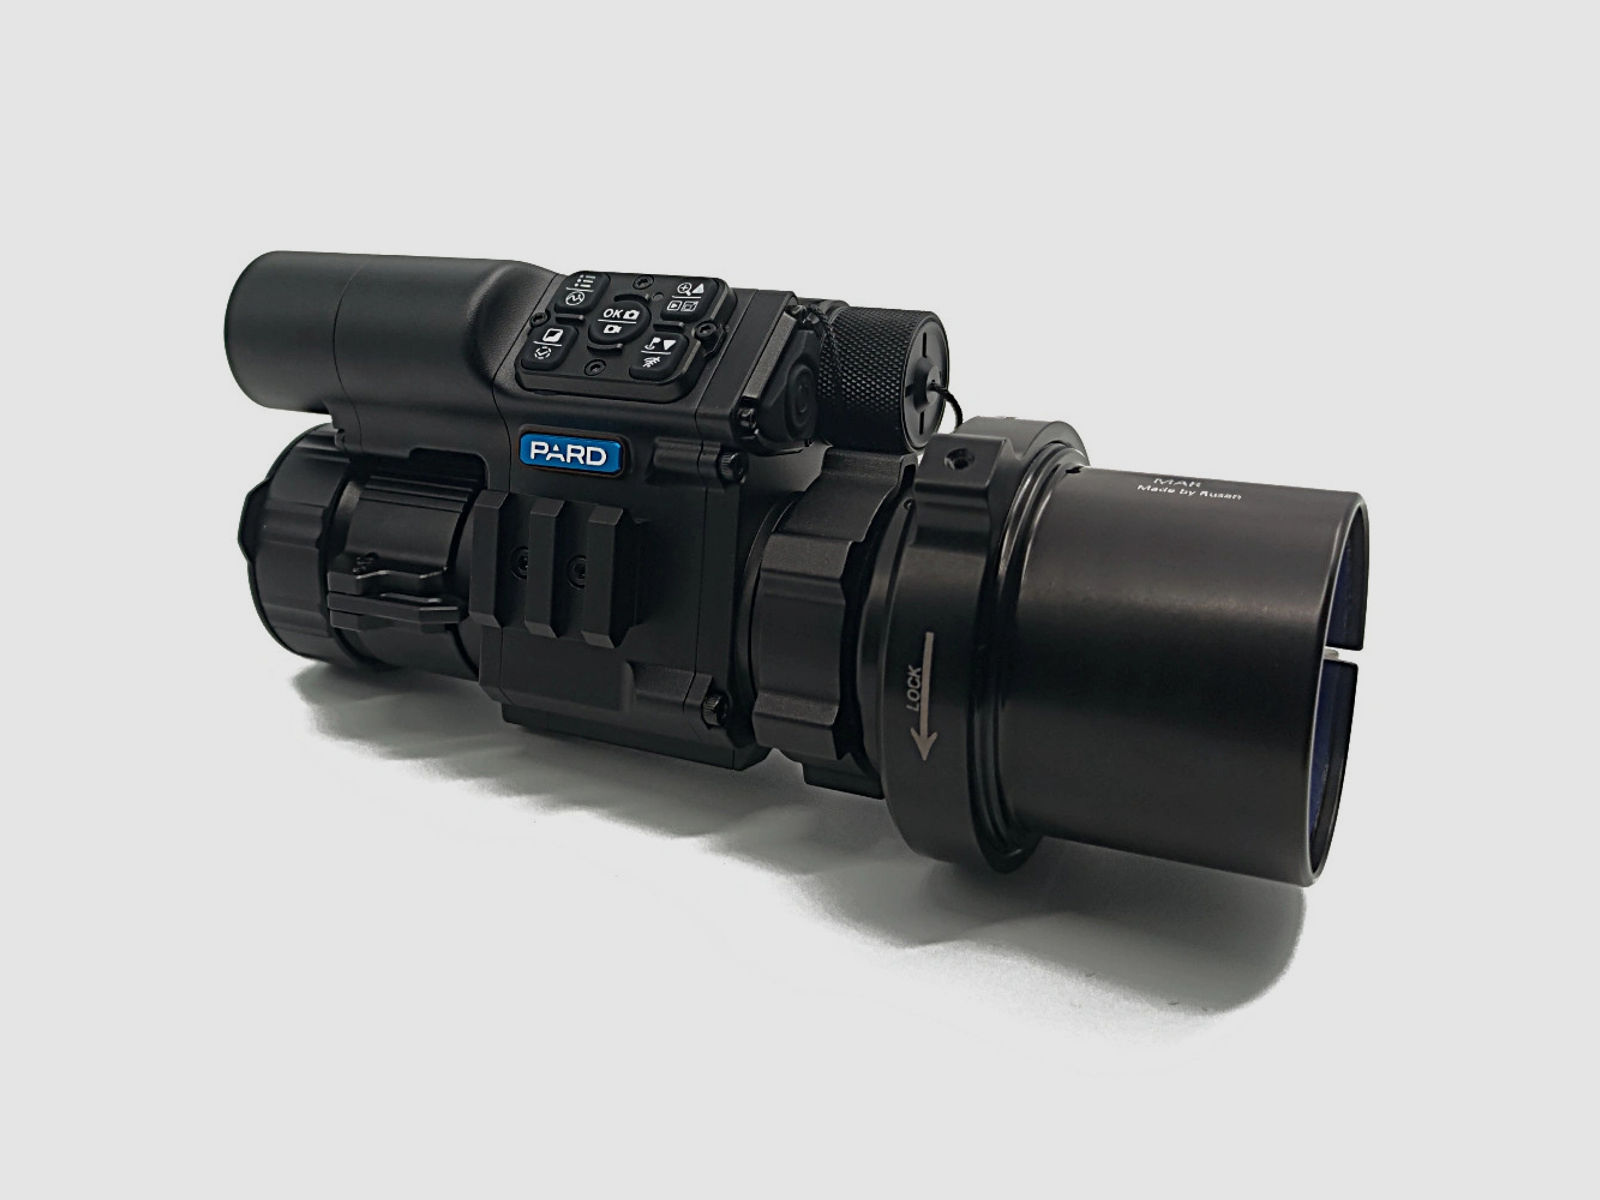 PARD FD1 Nachtsicht 3 in 1 Vorsatz, Monokular & Zielfernrohr - 850 nm mit LRF 65 mm RUSAN MAR + RUSAN MCR